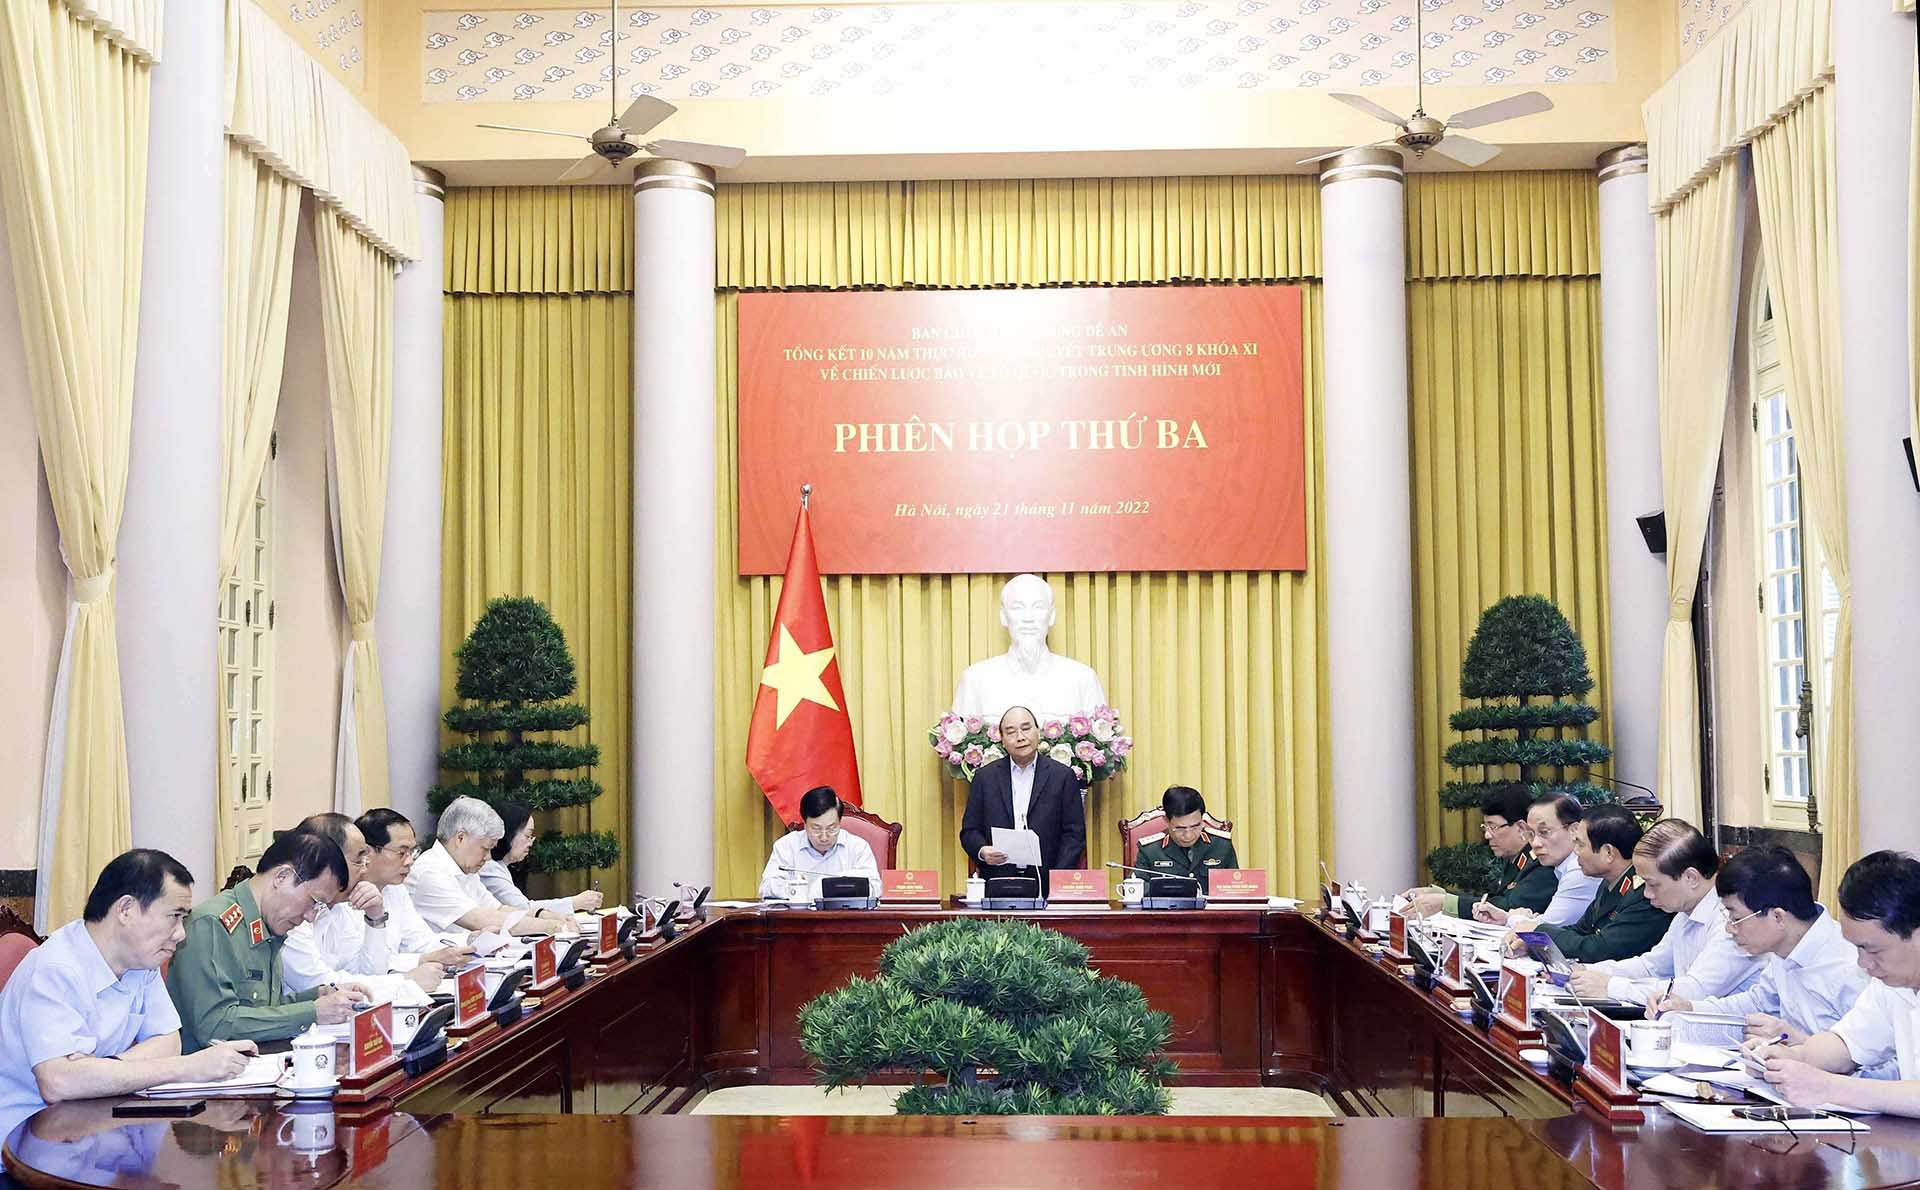 Chủ tịch nước Nguyễn Xuân Phúc chủ trì Phiên họp thứ 3 về Đề án Tổng kết Chiến lược bảo vệ Tổ quốc trong tình hình mới. (Nguồn: TTXVN)